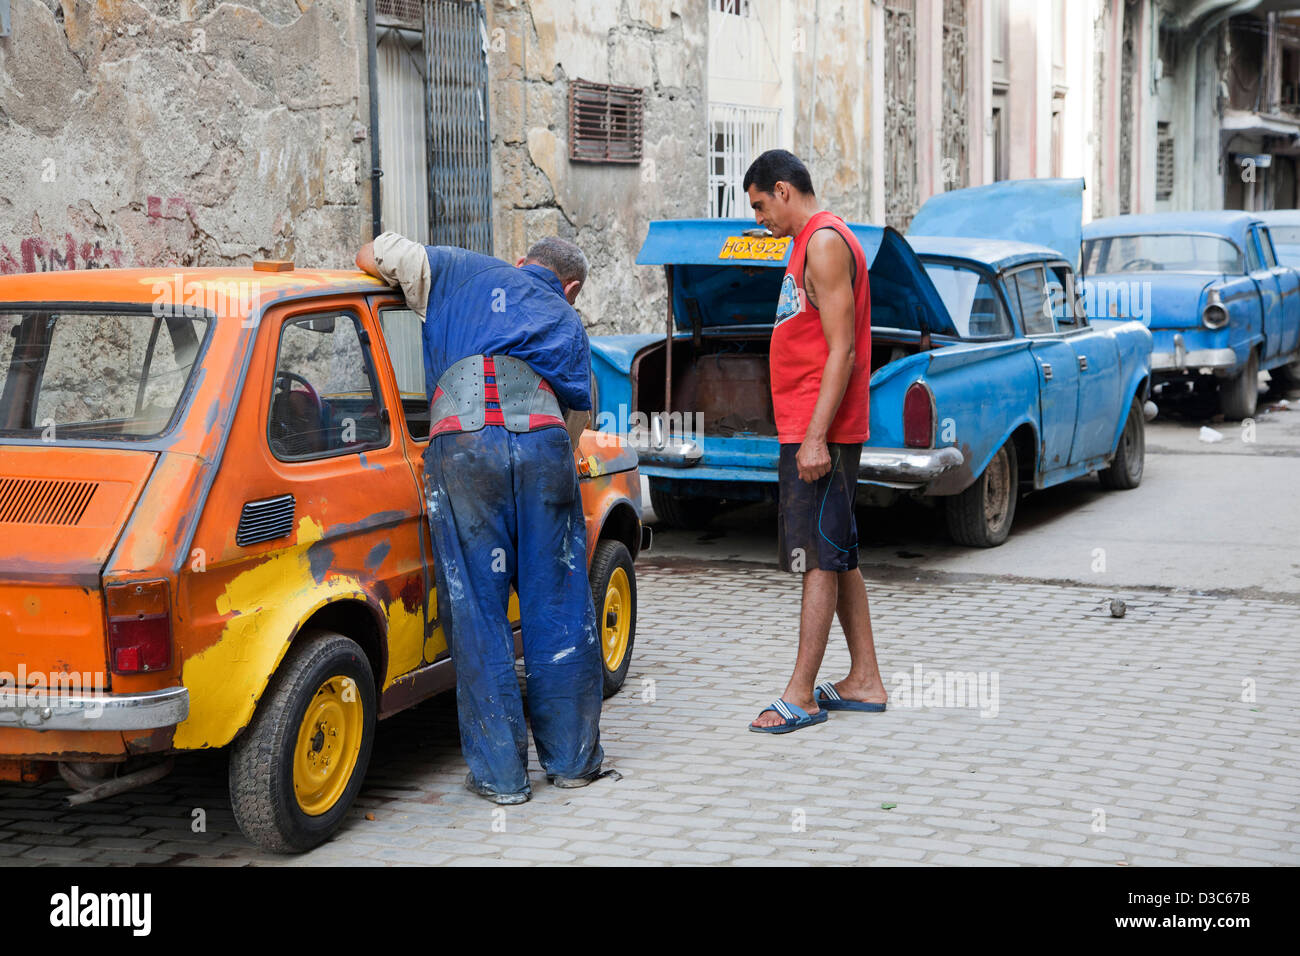 1950er Jahren Amerikanische Oldtimer Reissen Tank Und Kubanischen Kfz Mechaniker Reparatur Alte Autos Auf Der Strasse In Havanna Kuba Karibik Stockfotografie Alamy